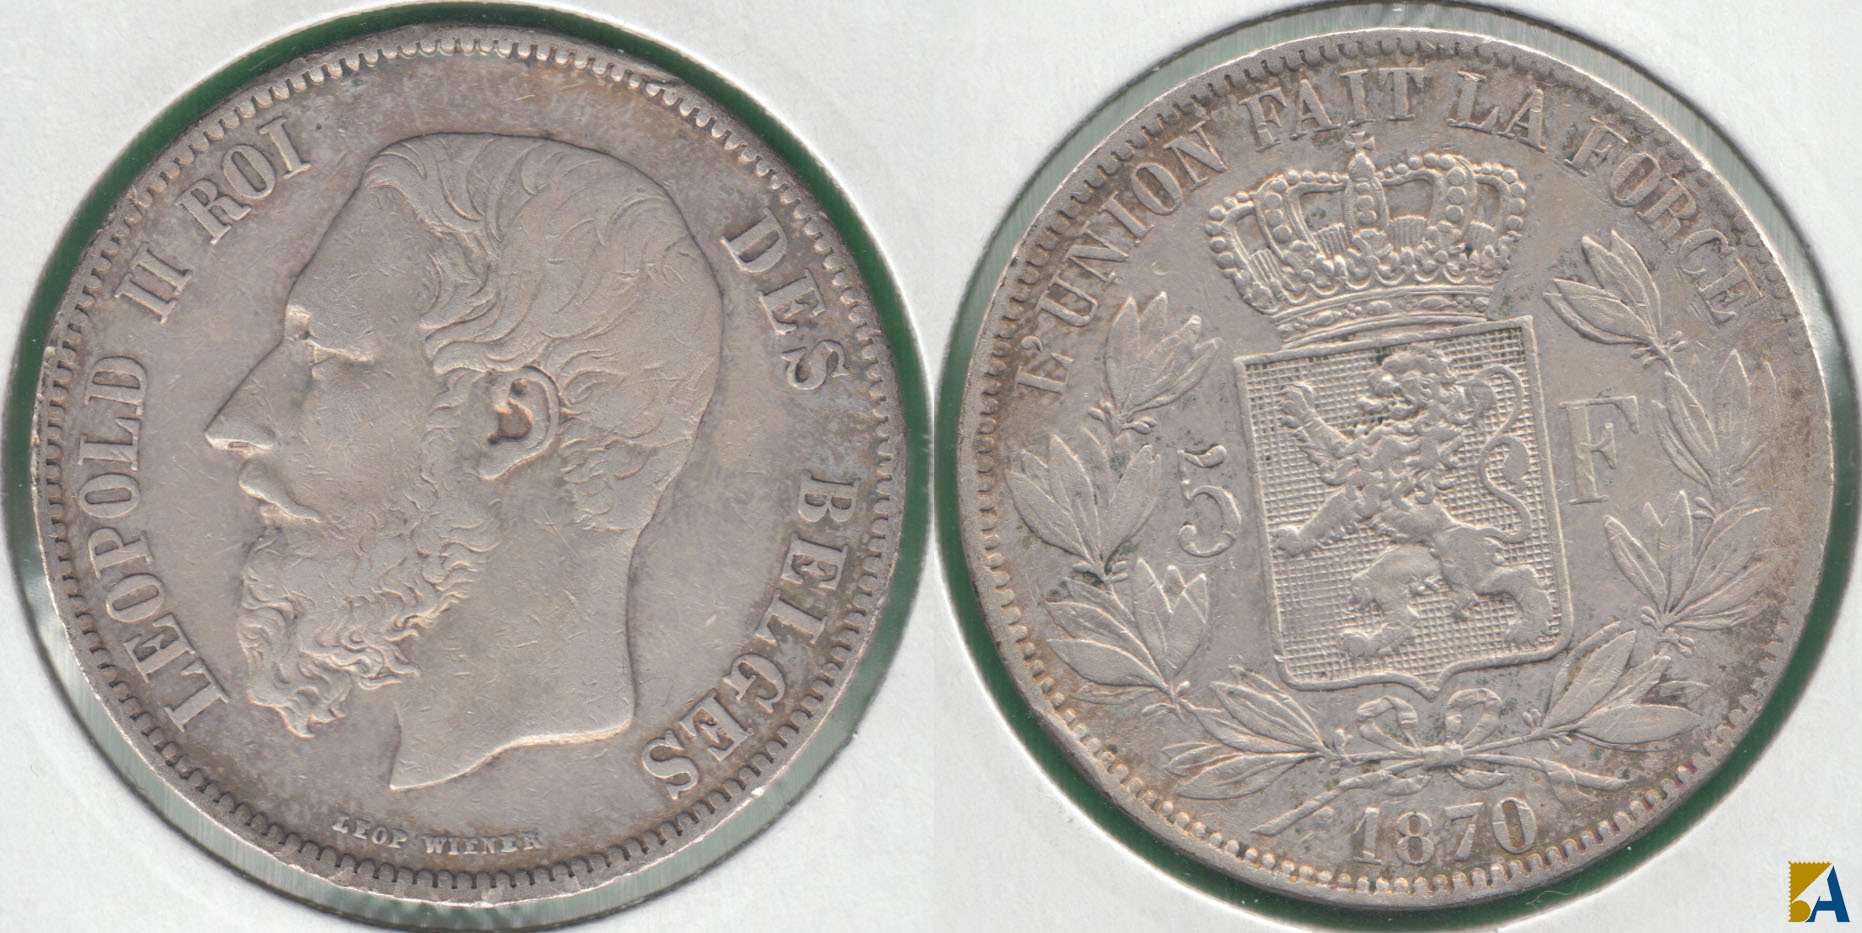 BELGICA - BELGIUM. 5 FRANCOS (FRANCS) DE 1870. PLATA 0.900.